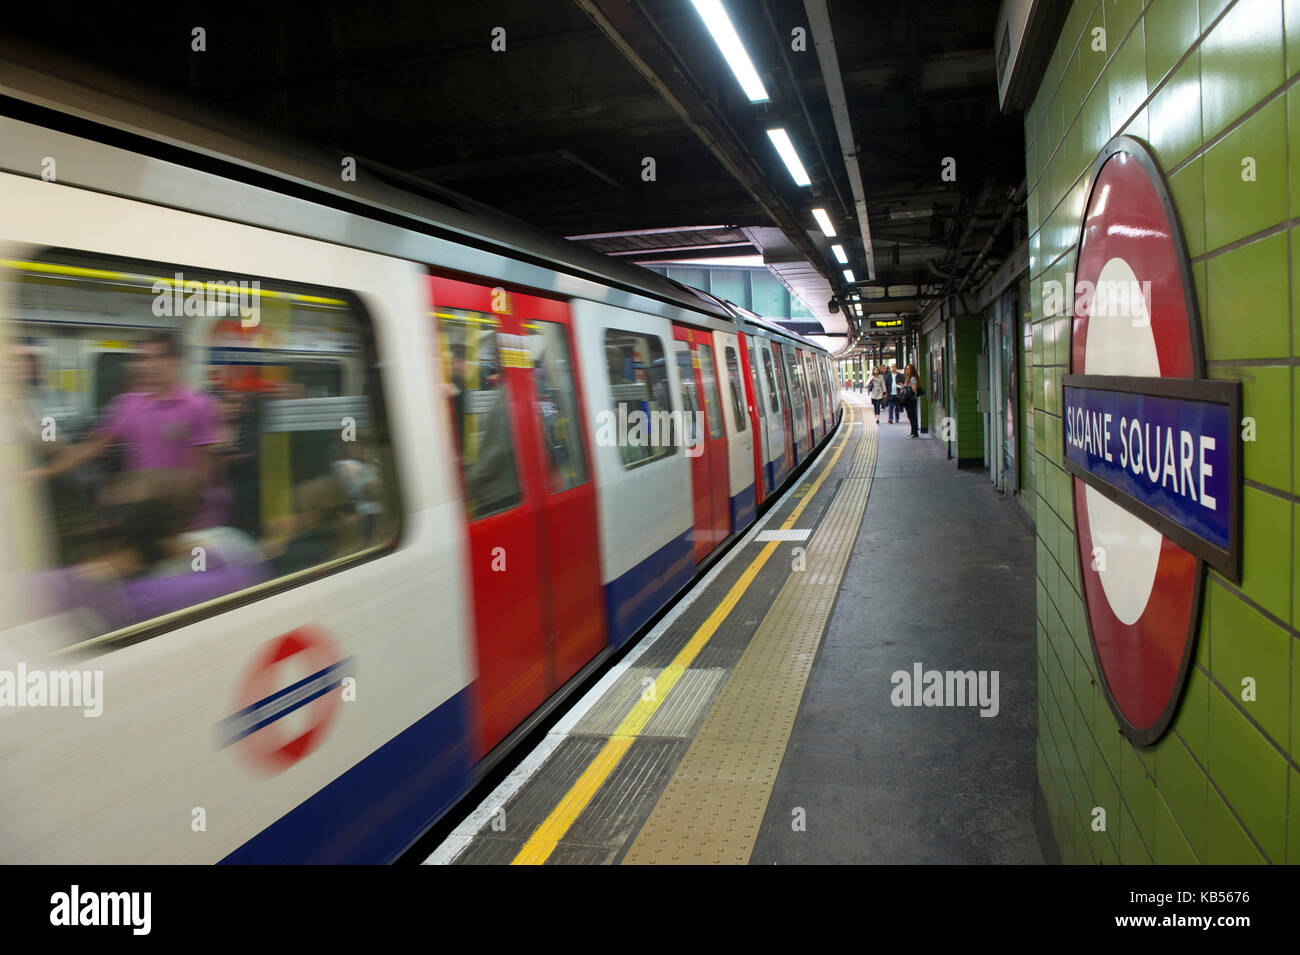 United Kingdom, London, Chelsea, Underground, Sloane Square station Stock Photo